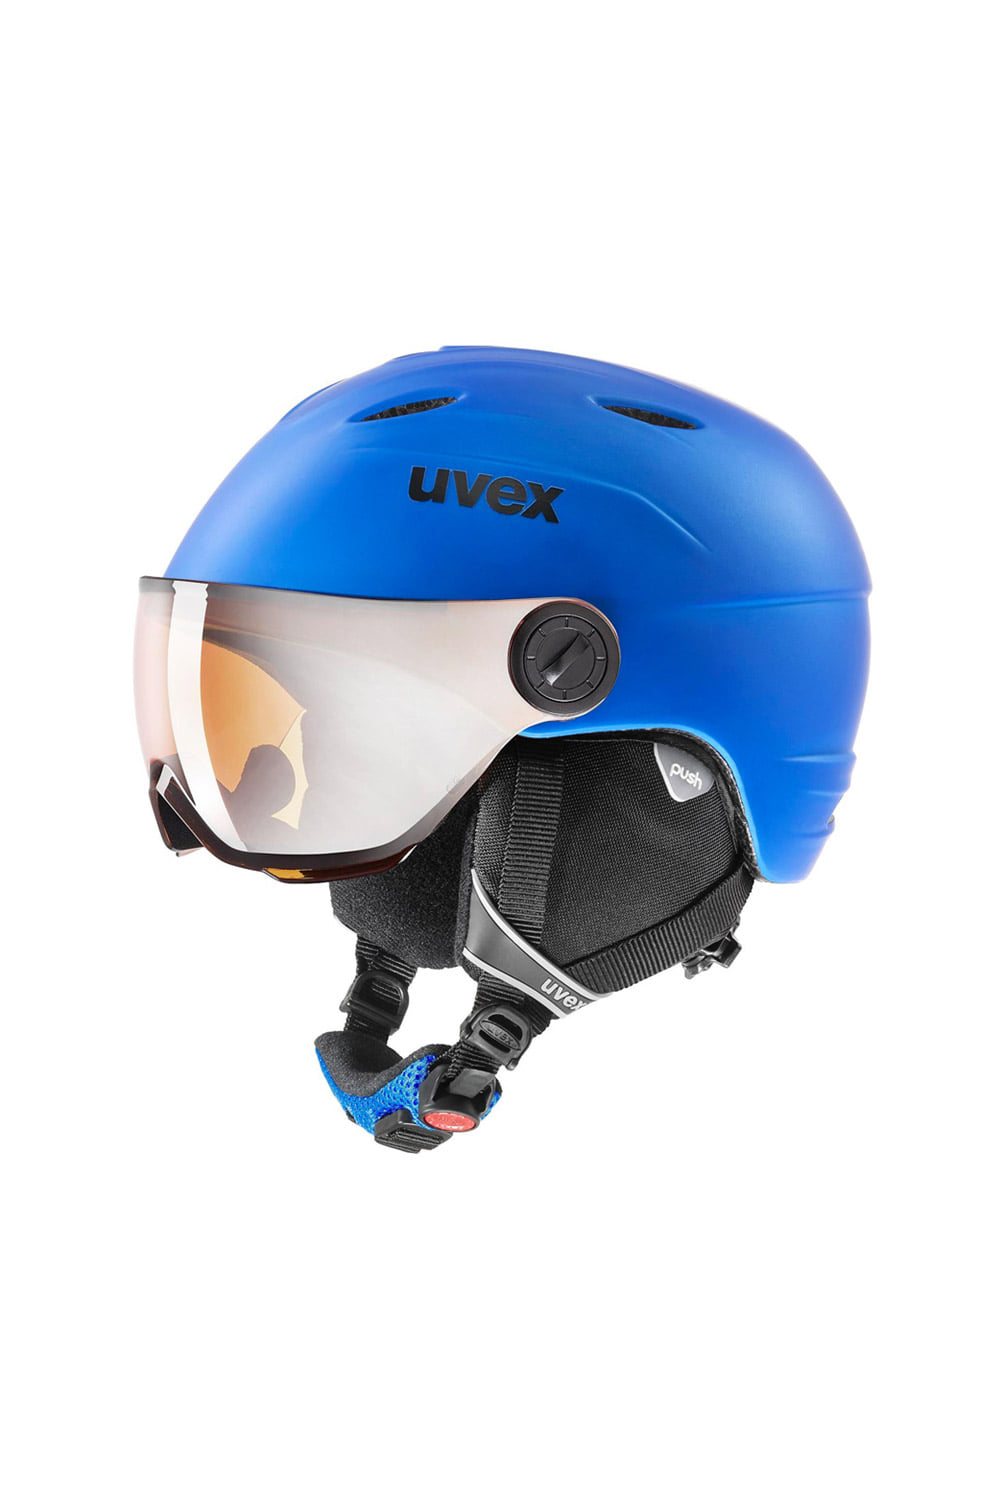 우벡스 주니어 헬멧 바이저 프로 2021 UVEX JUNIOR VISOR PRO-BLUE MAT_LITEMIRROR SILVER S2_키즈바이저헬멧_DFUV019BU